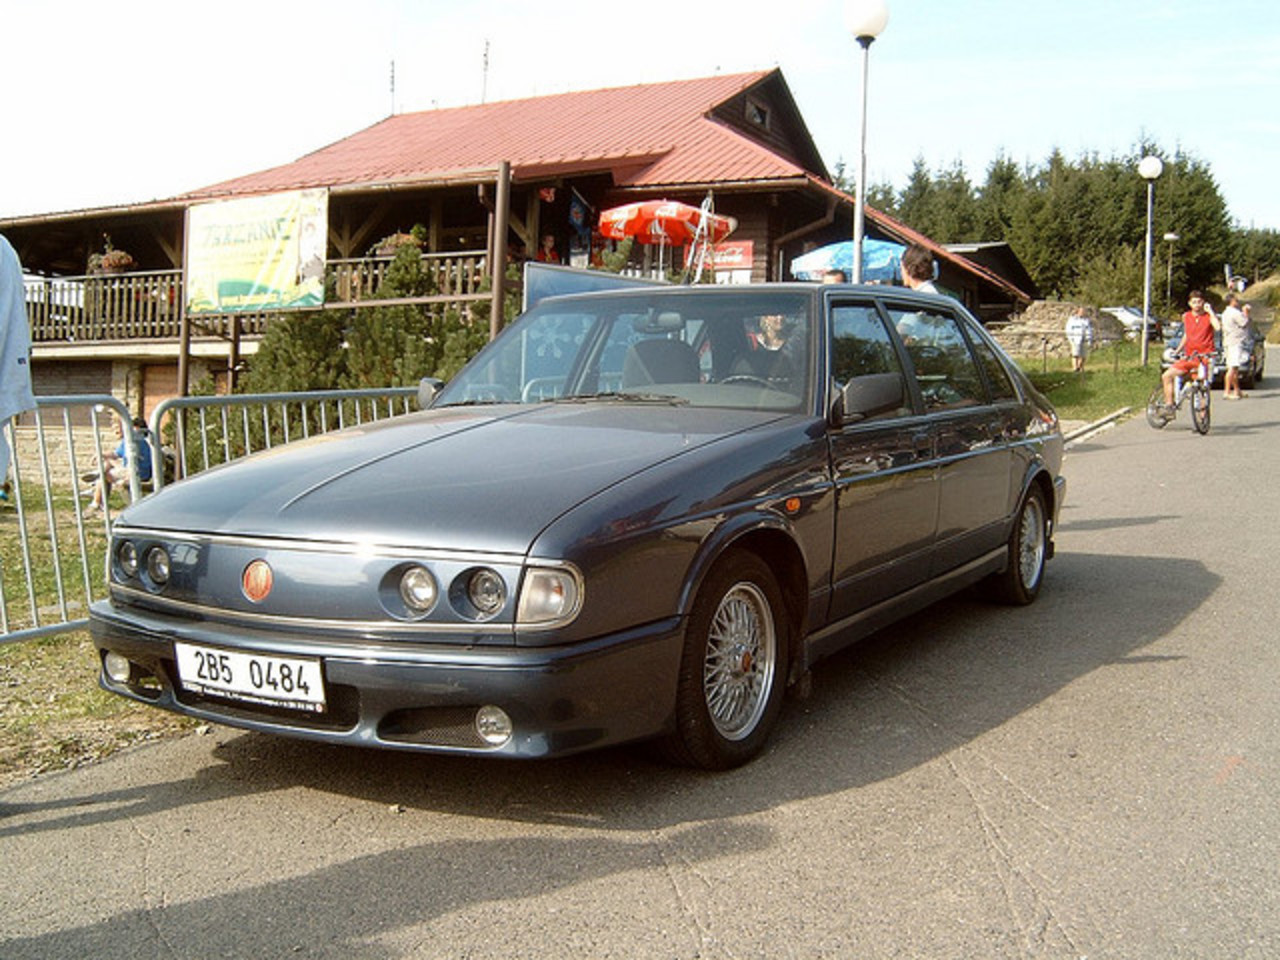 1998 Tatra T700 | Flickr - Photo Sharing!